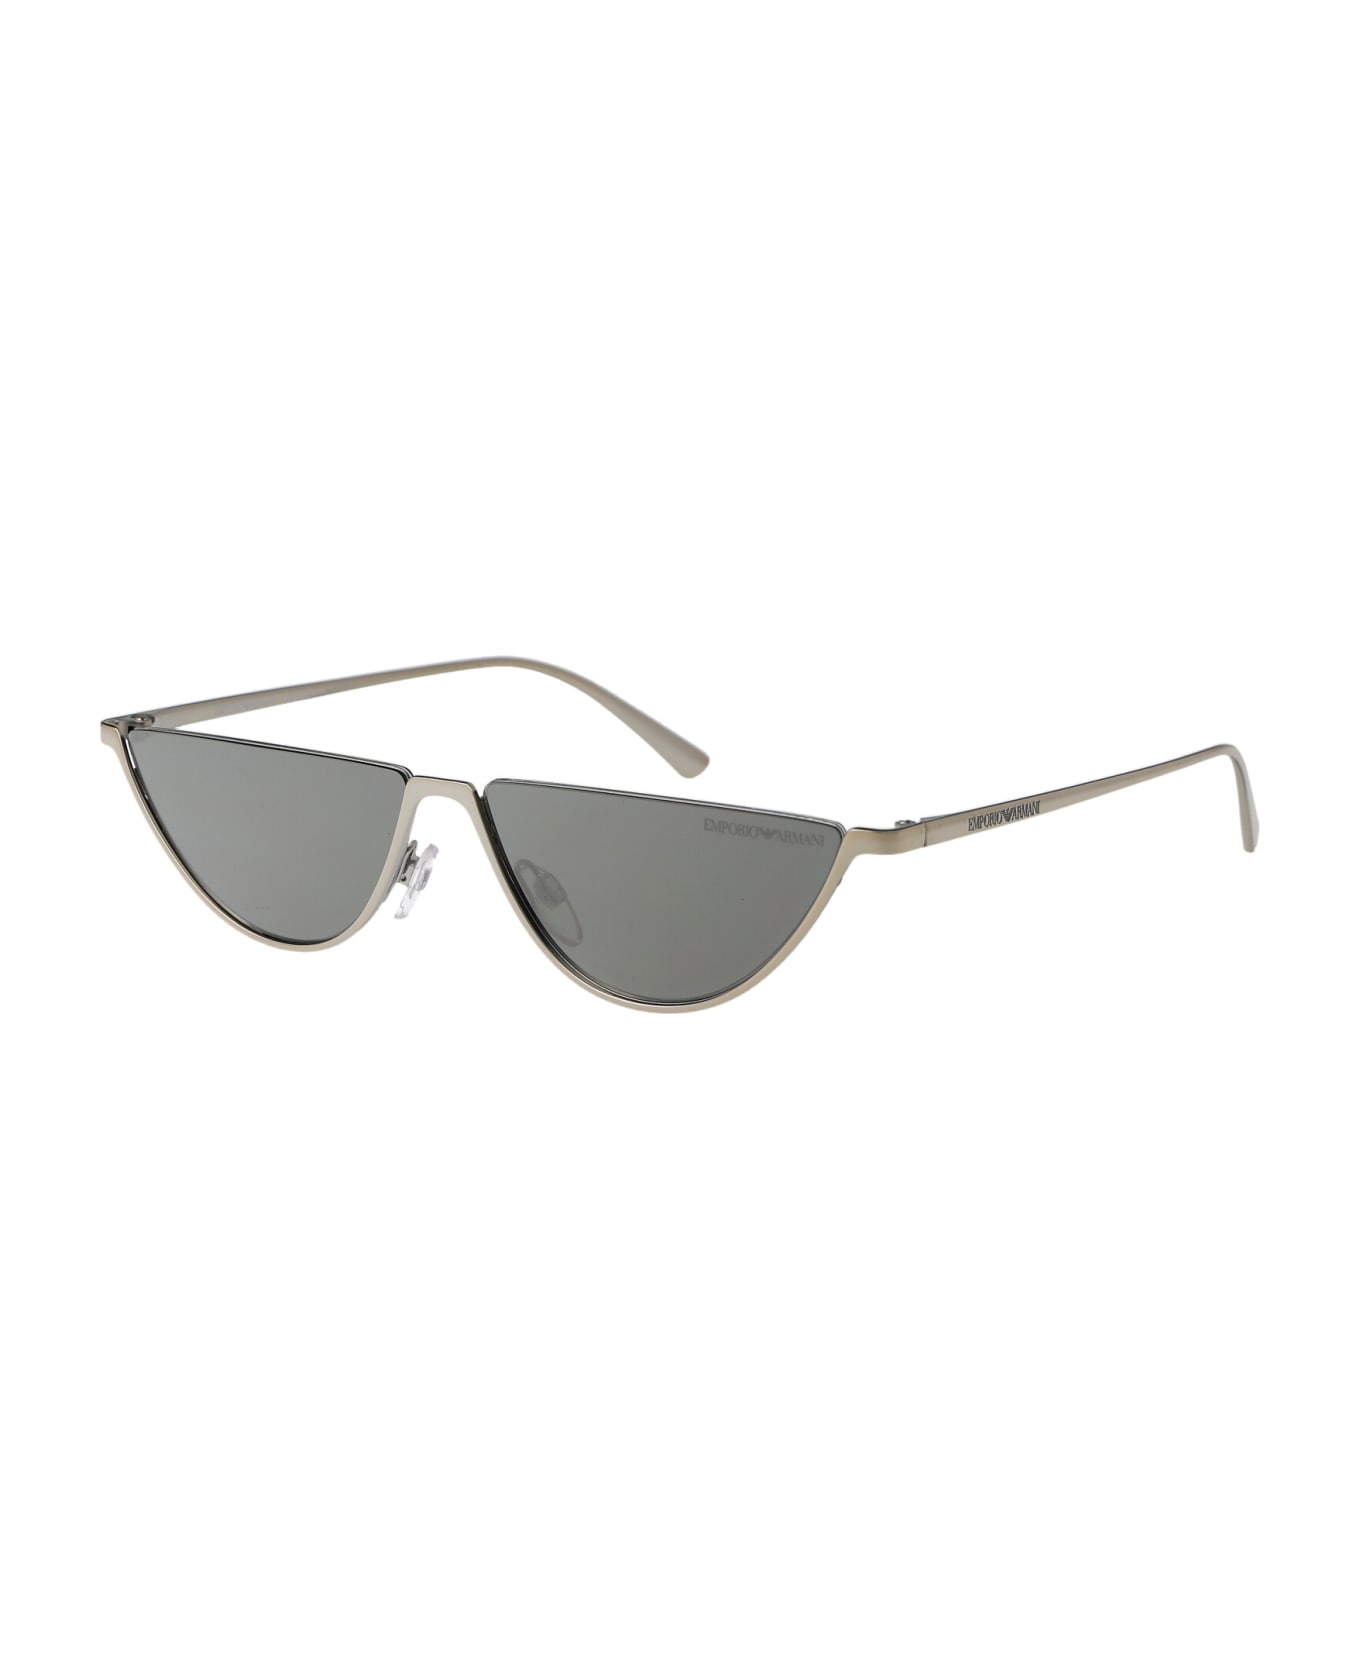 Emporio Armani 0ea2143 Sunglasses - 30156G SHINY SILVER